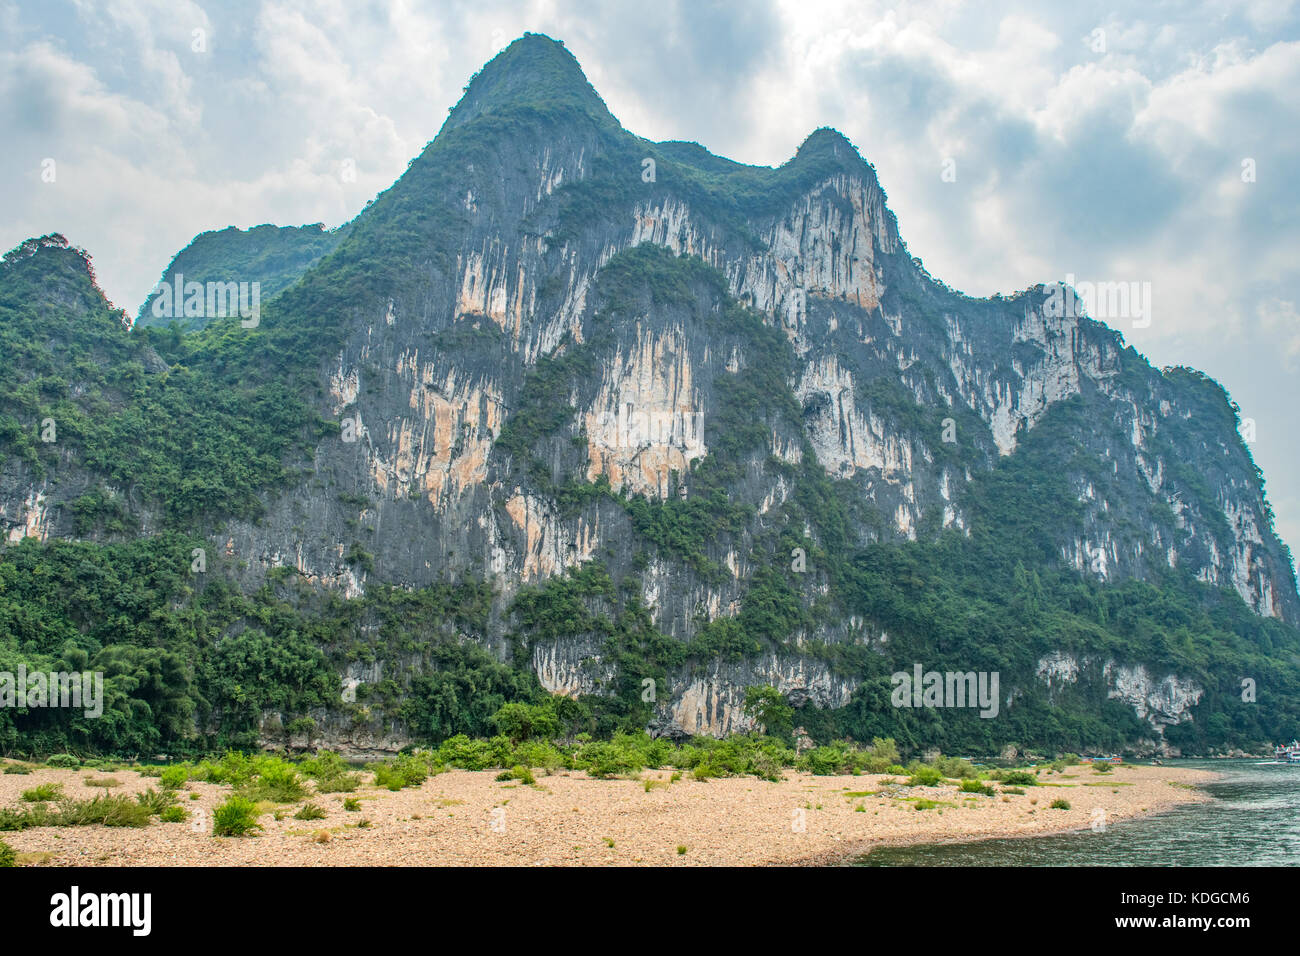 La colline de neuf chevaux peints, rivière Lijiang, au sud de Guilin, Guangxi, Chine Banque D'Images